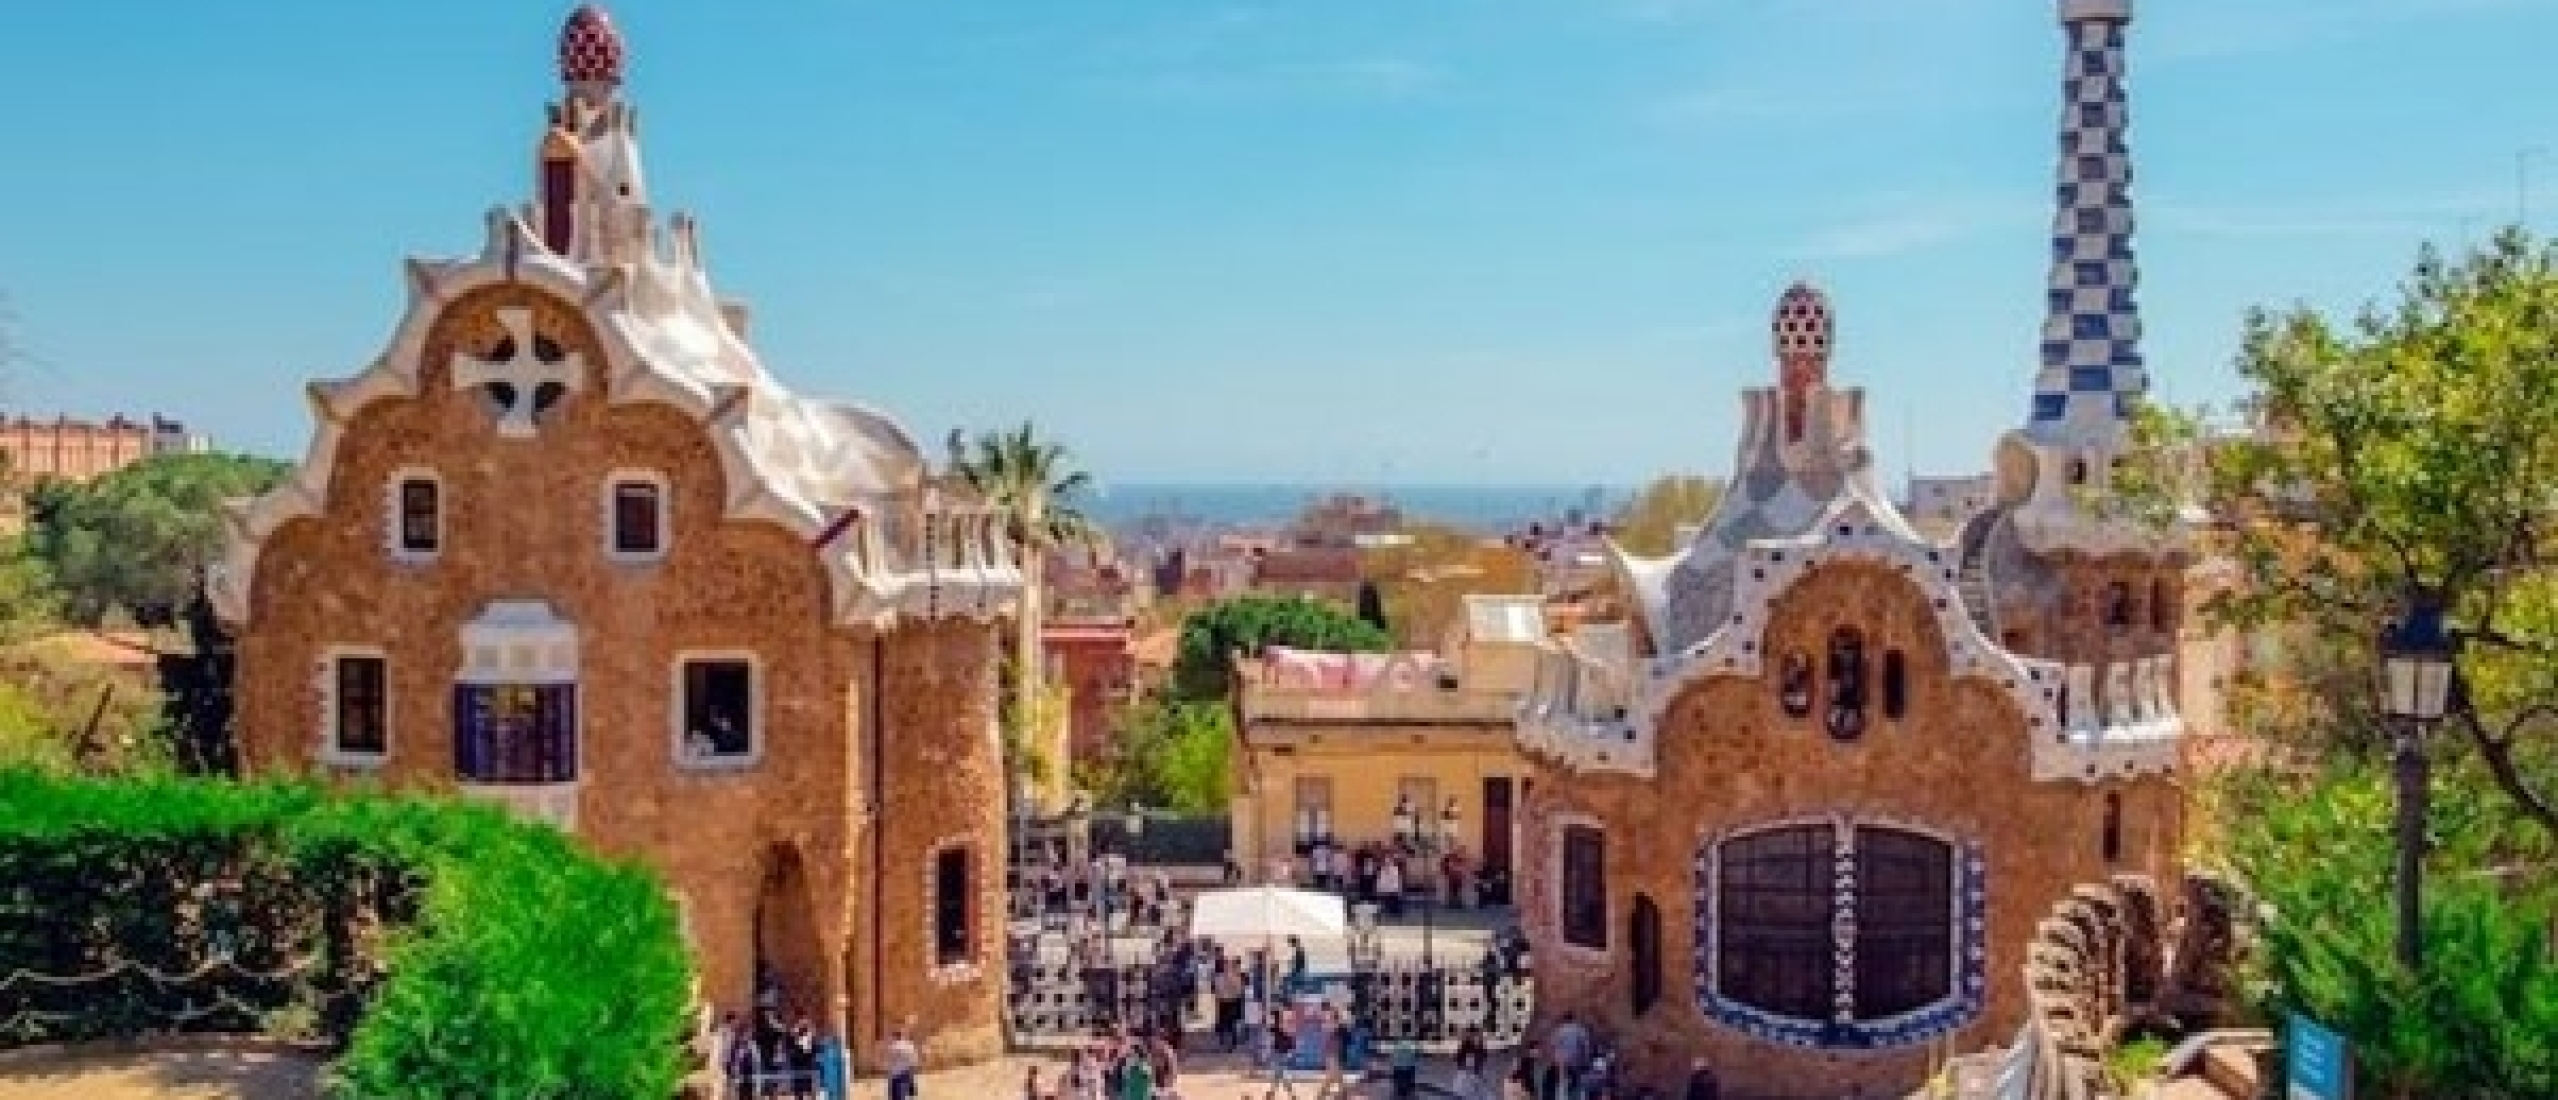 De 10 mooiste kustplaatsen van Spanje